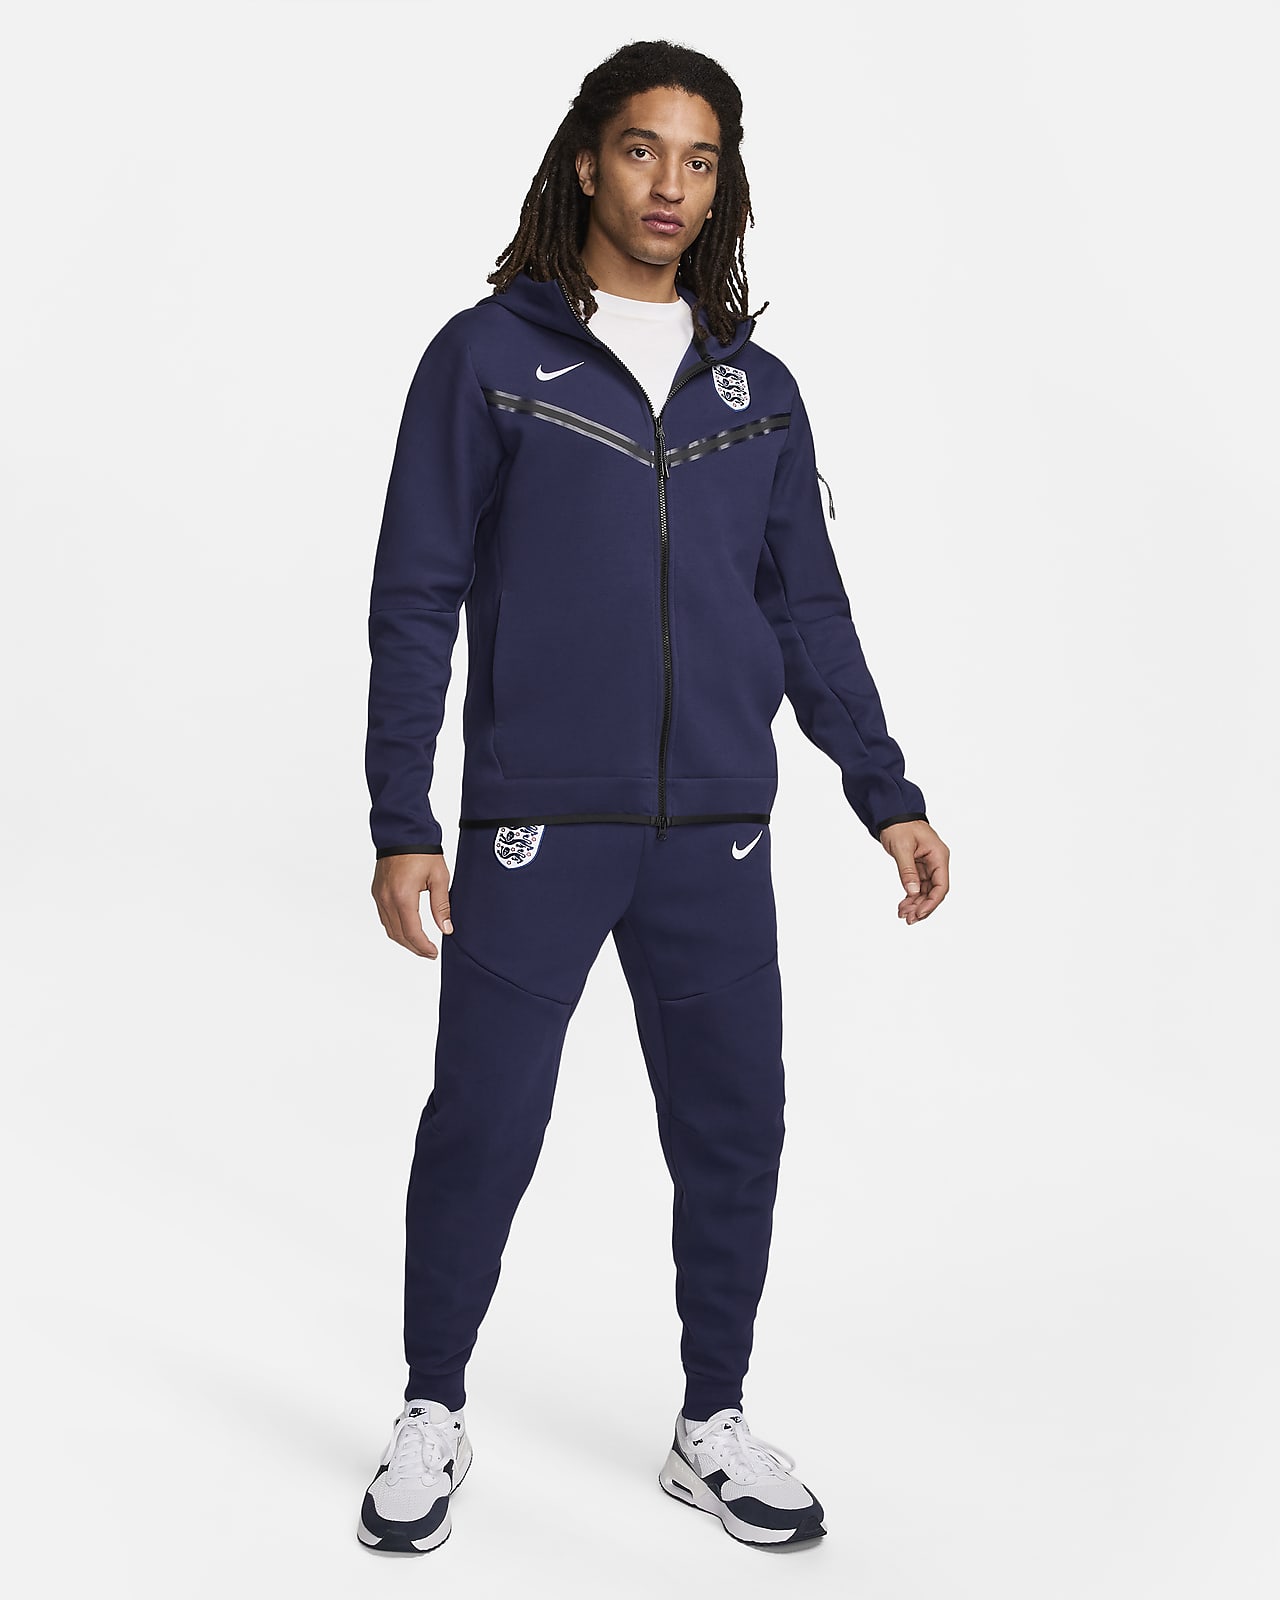 Ανδρική ποδοσφαιρική μπλούζα με κουκούλα και φερμουάρ σε όλο το μήκος Nike Αγγλία Tech Fleece Windrunner